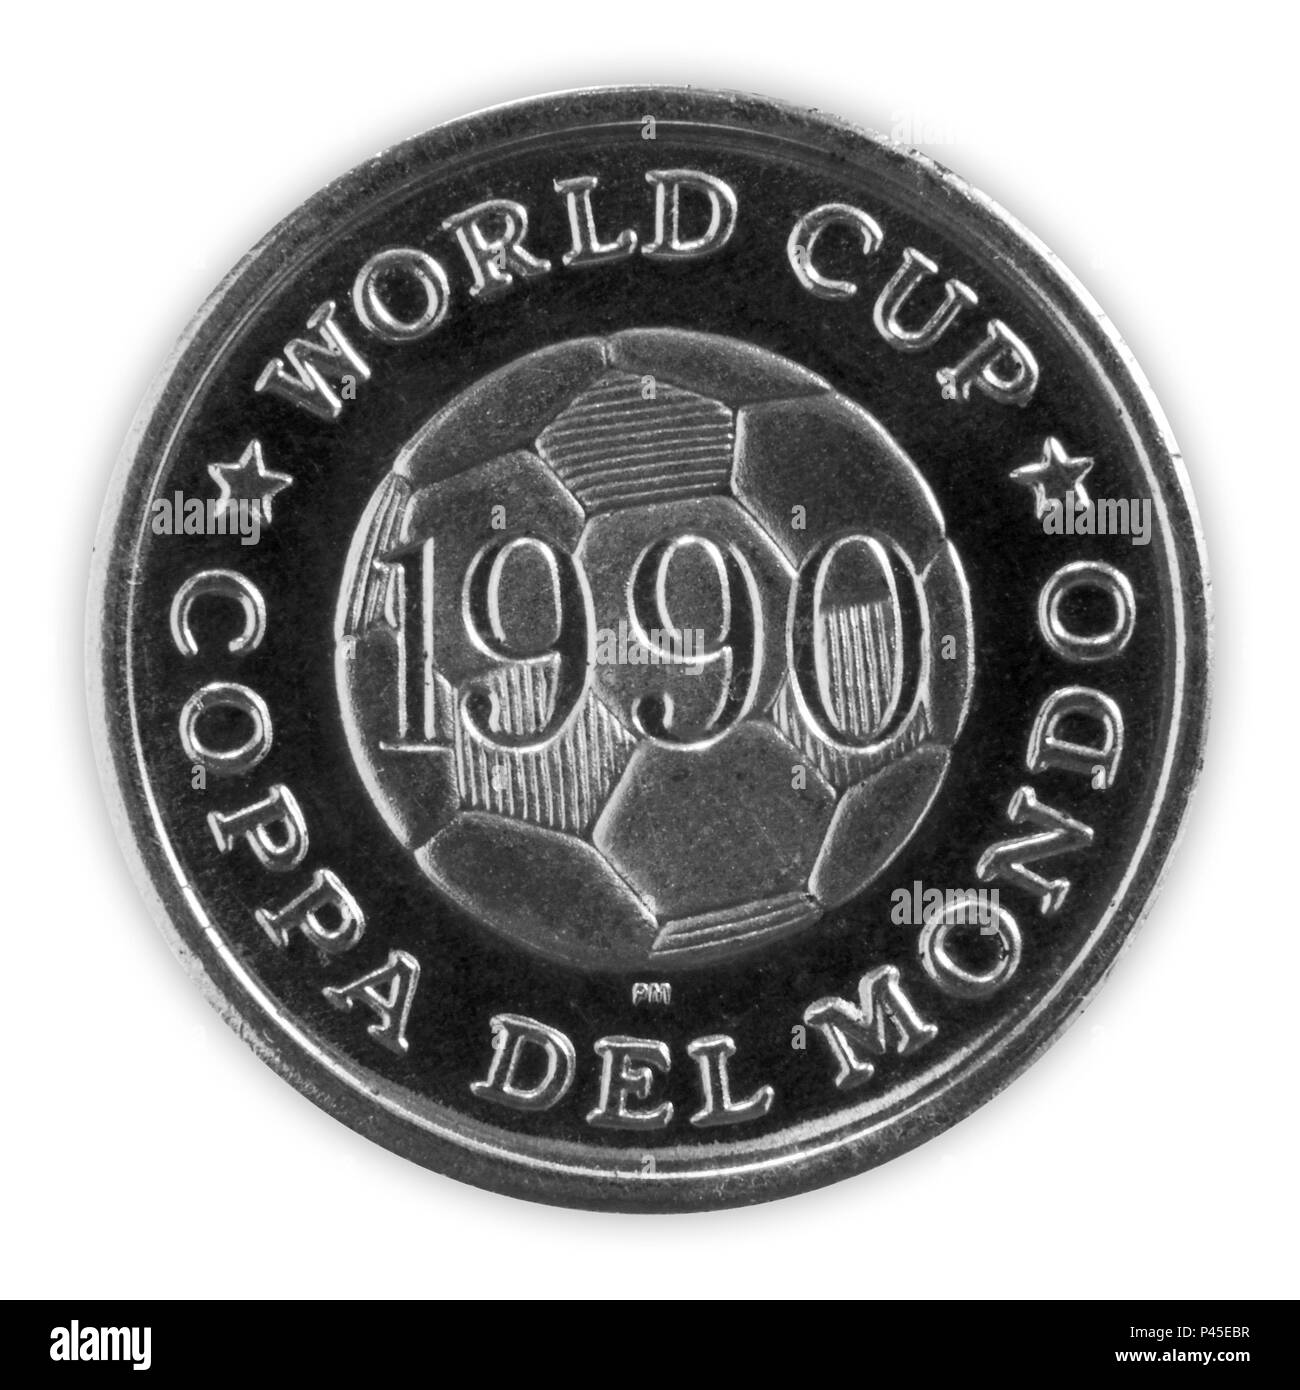 S M B Pin F S I 90 FIFA W Cup 1990 S U C $1.08 myc.com.mt